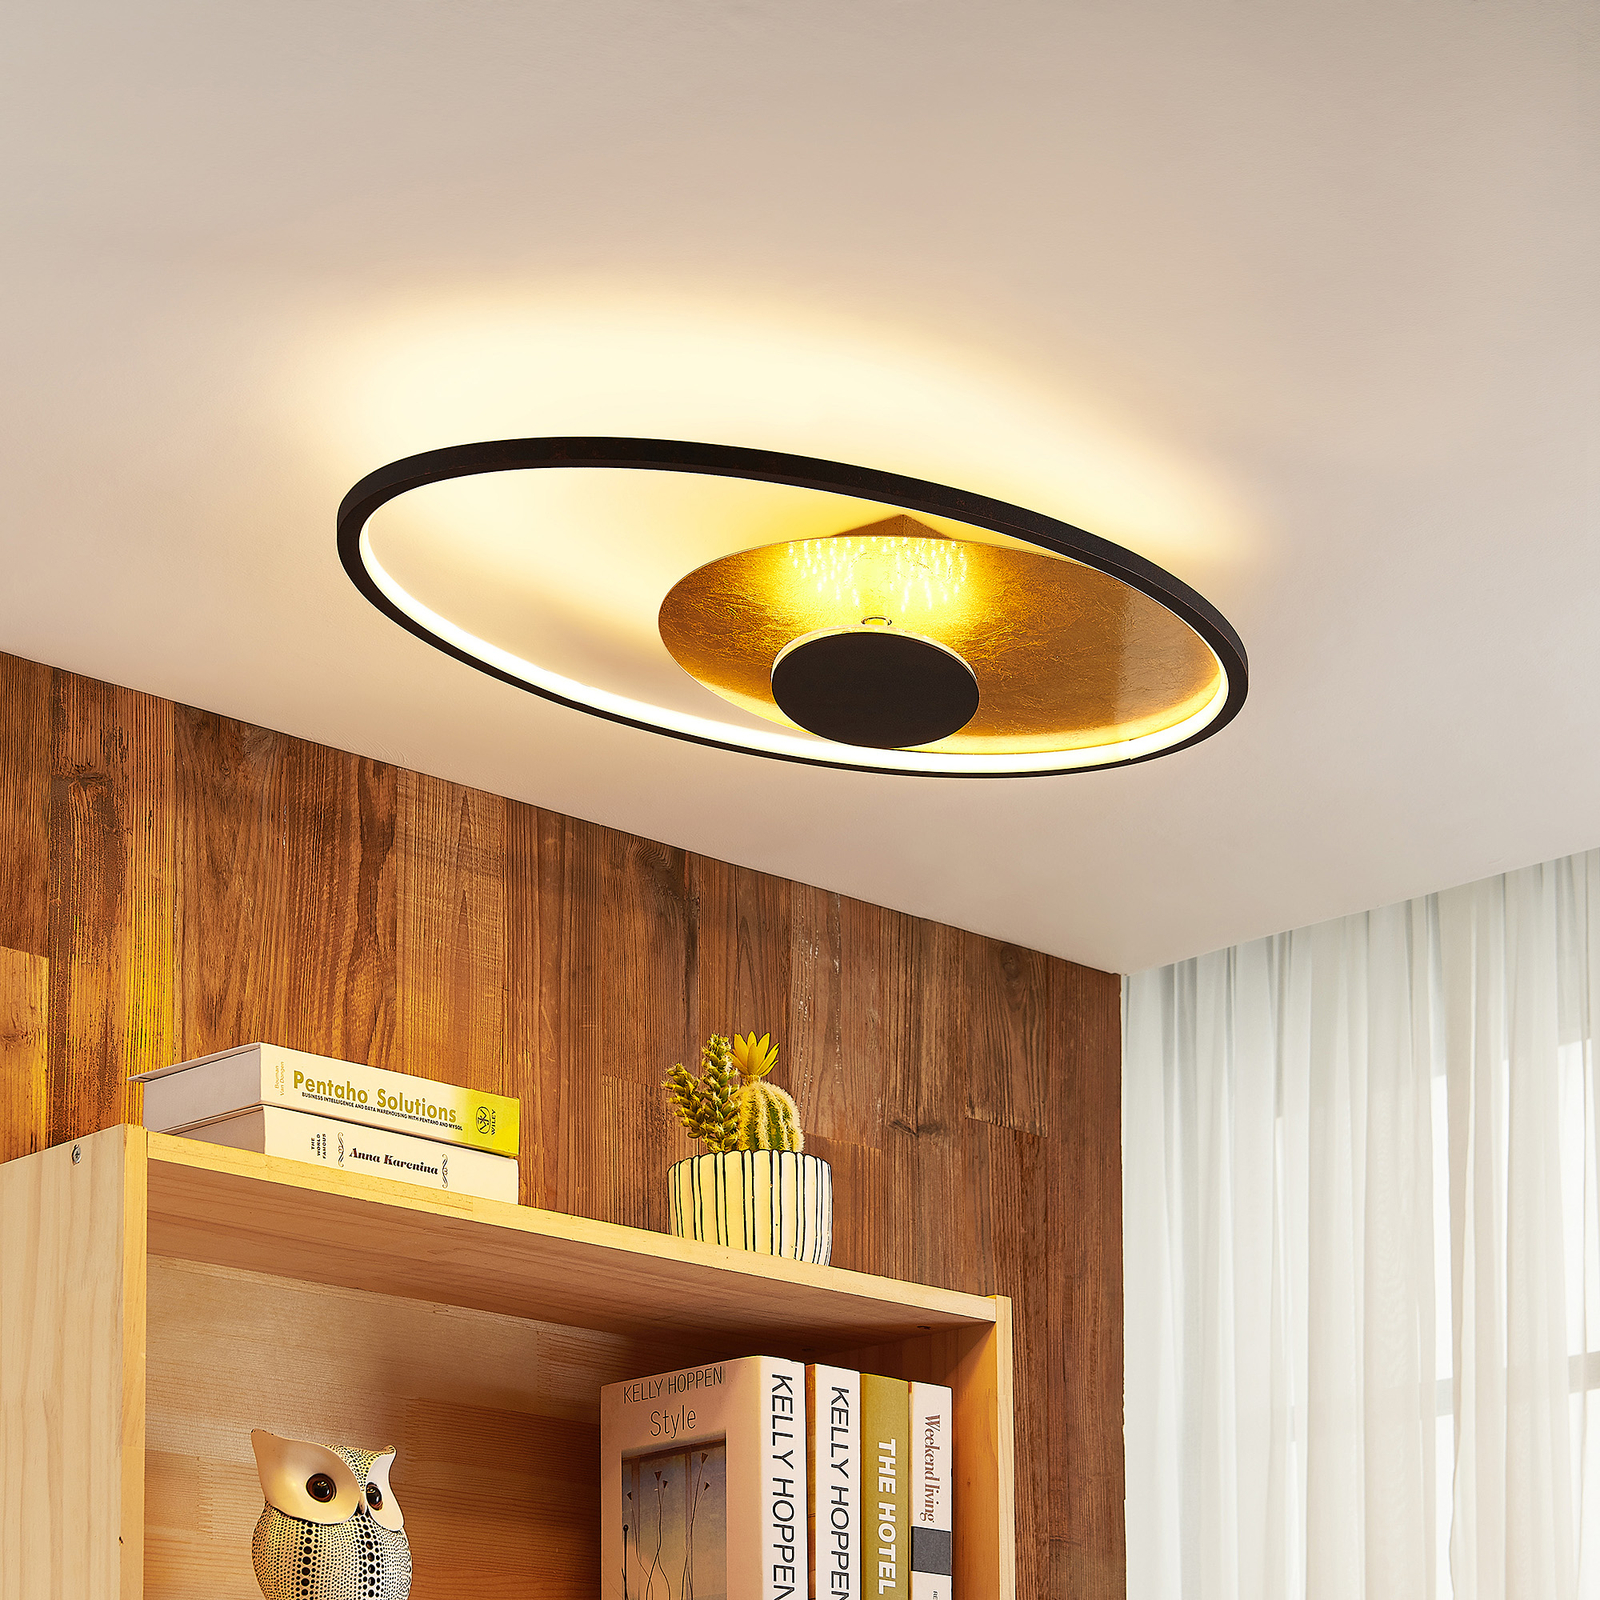 Lindby Feival LED ceiling light, 73 cm x 43 cm